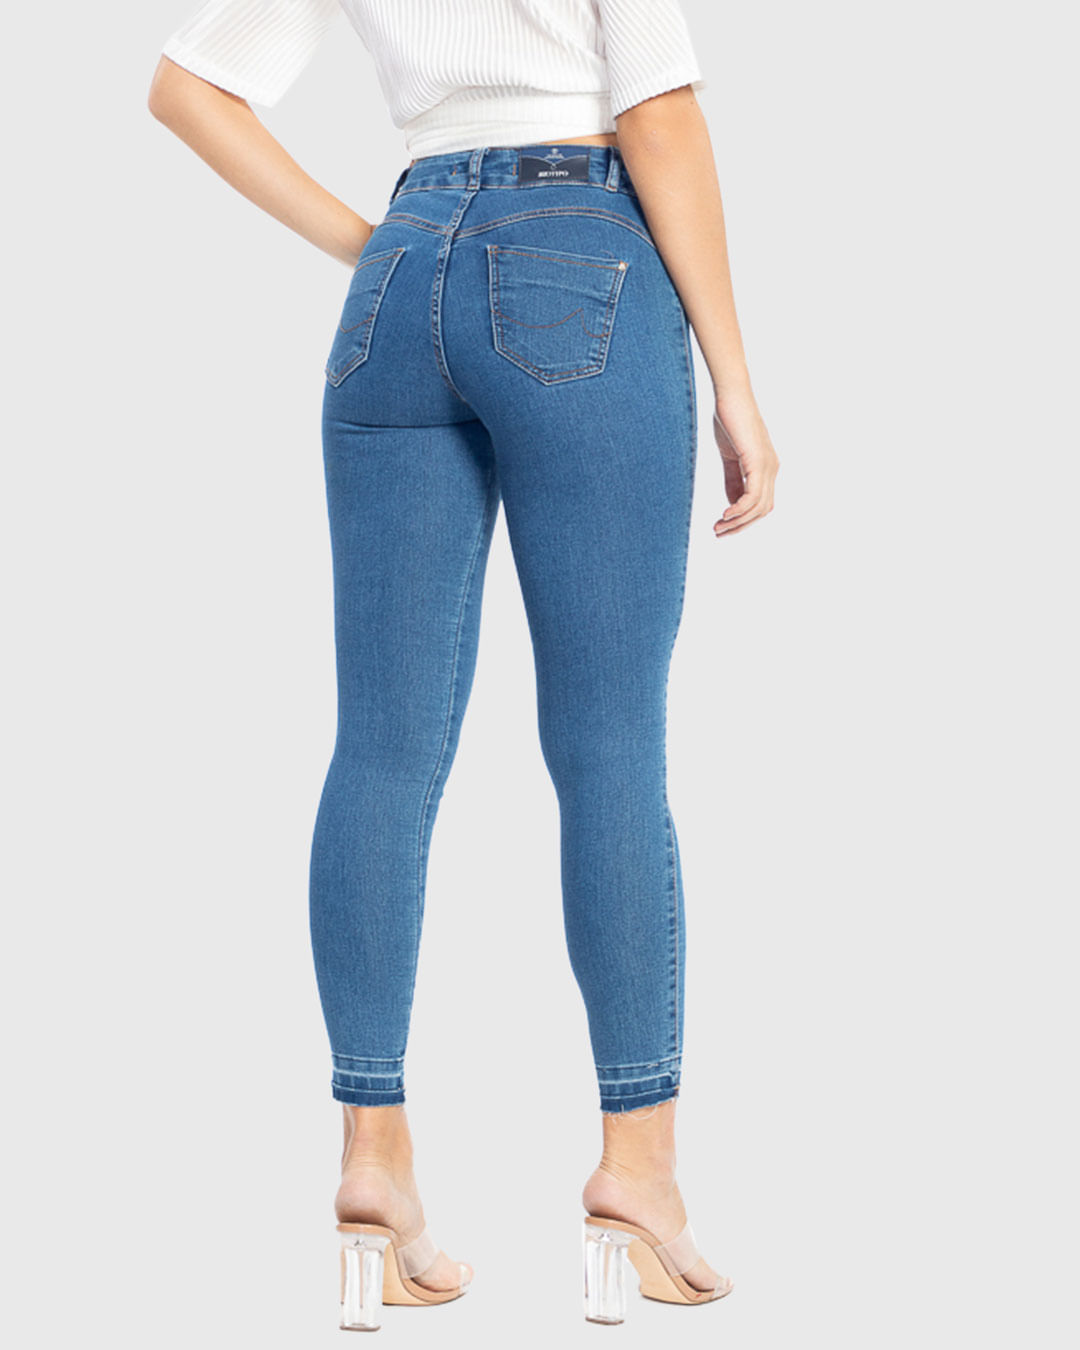 Calca-19422-Jeans-Skn-Fem-Ad---Blue-Jeans-Medio